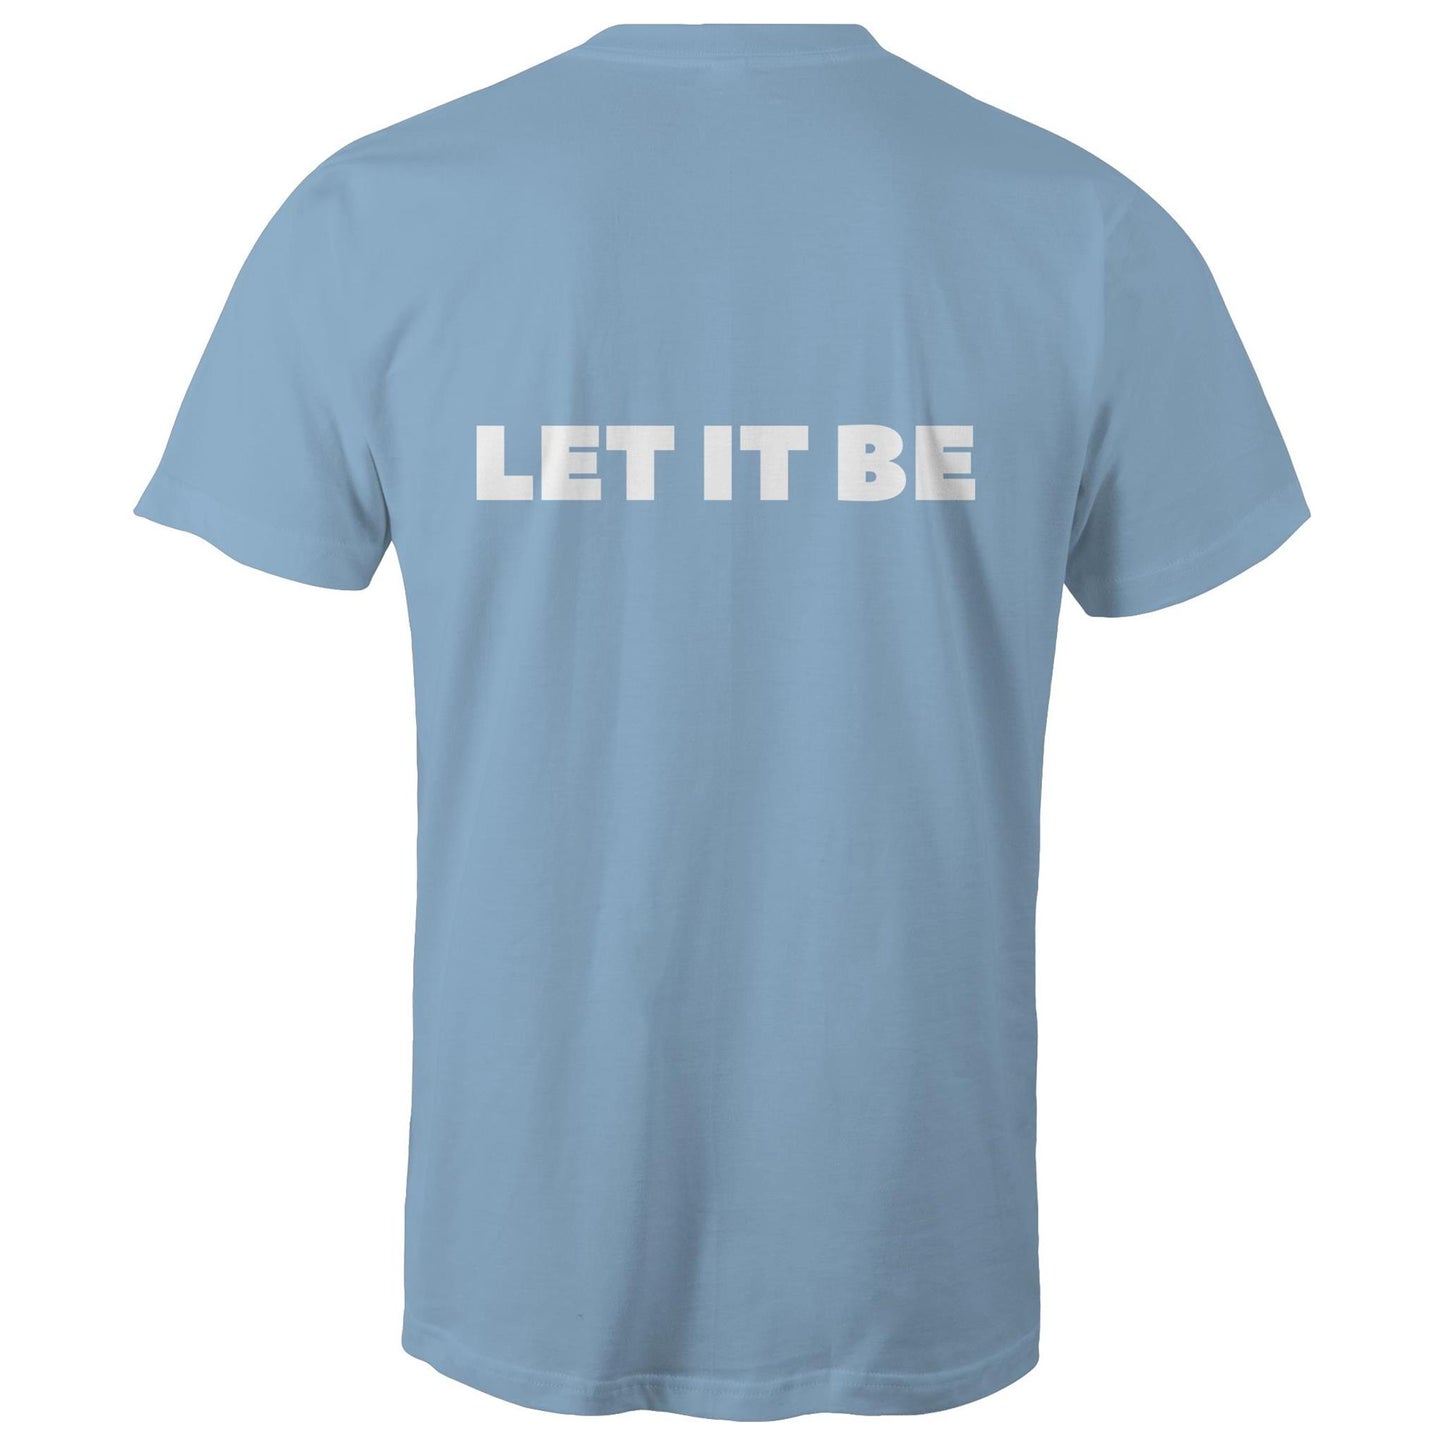 LET IT BE - Unisex T-Shirt